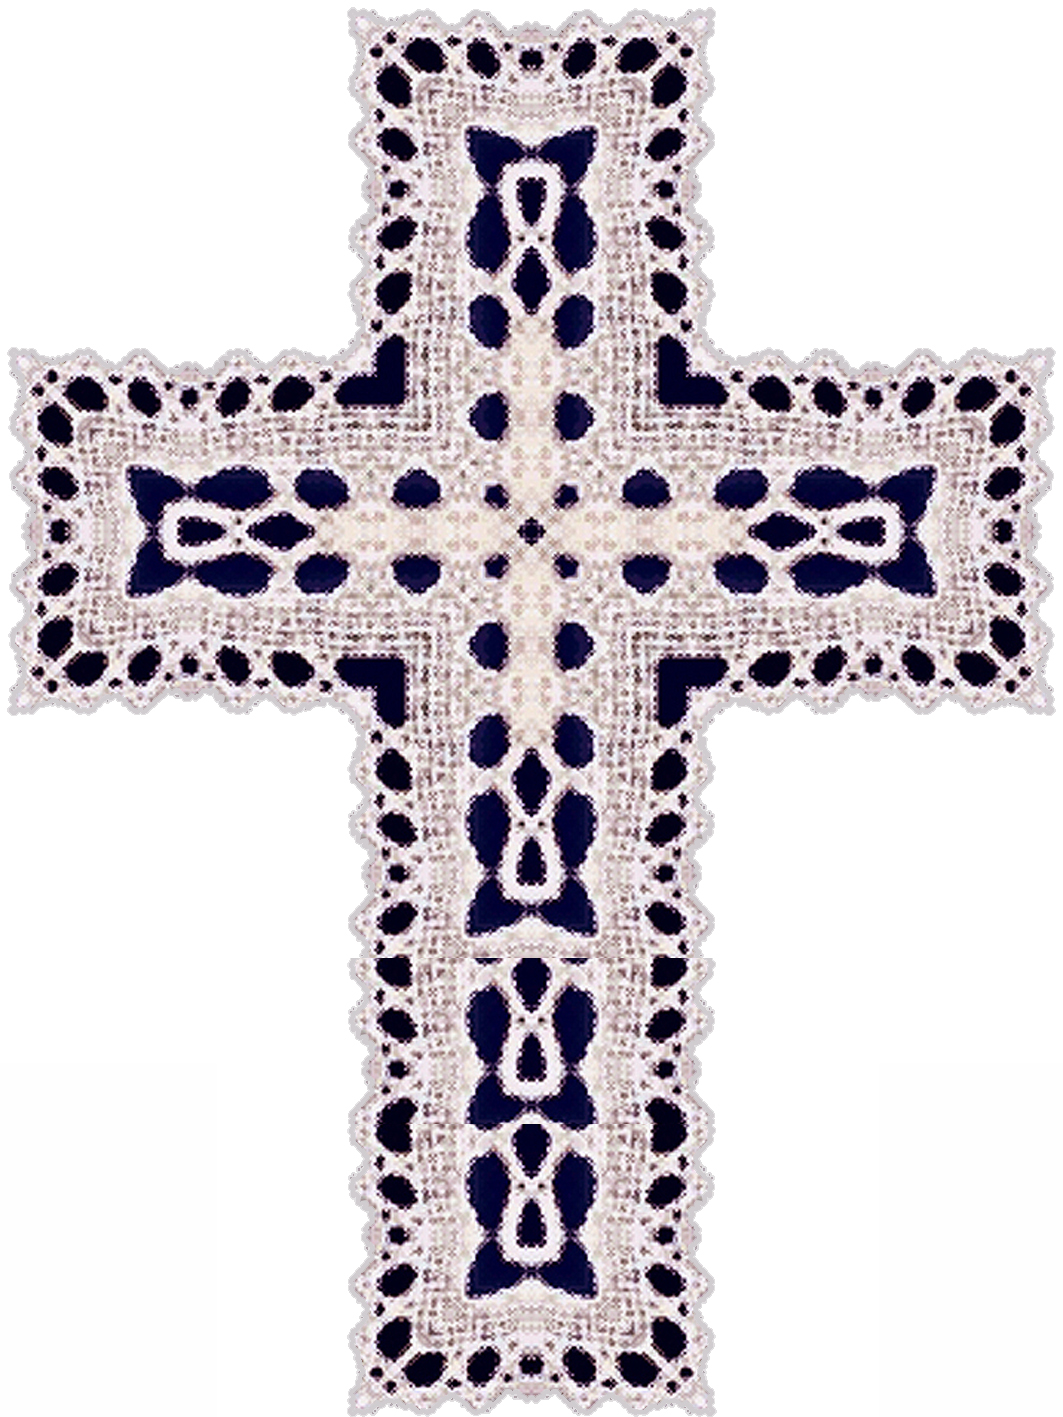 ArtbyJean - Easter Clip Art: Beautiful lace crochet pattern on an ...